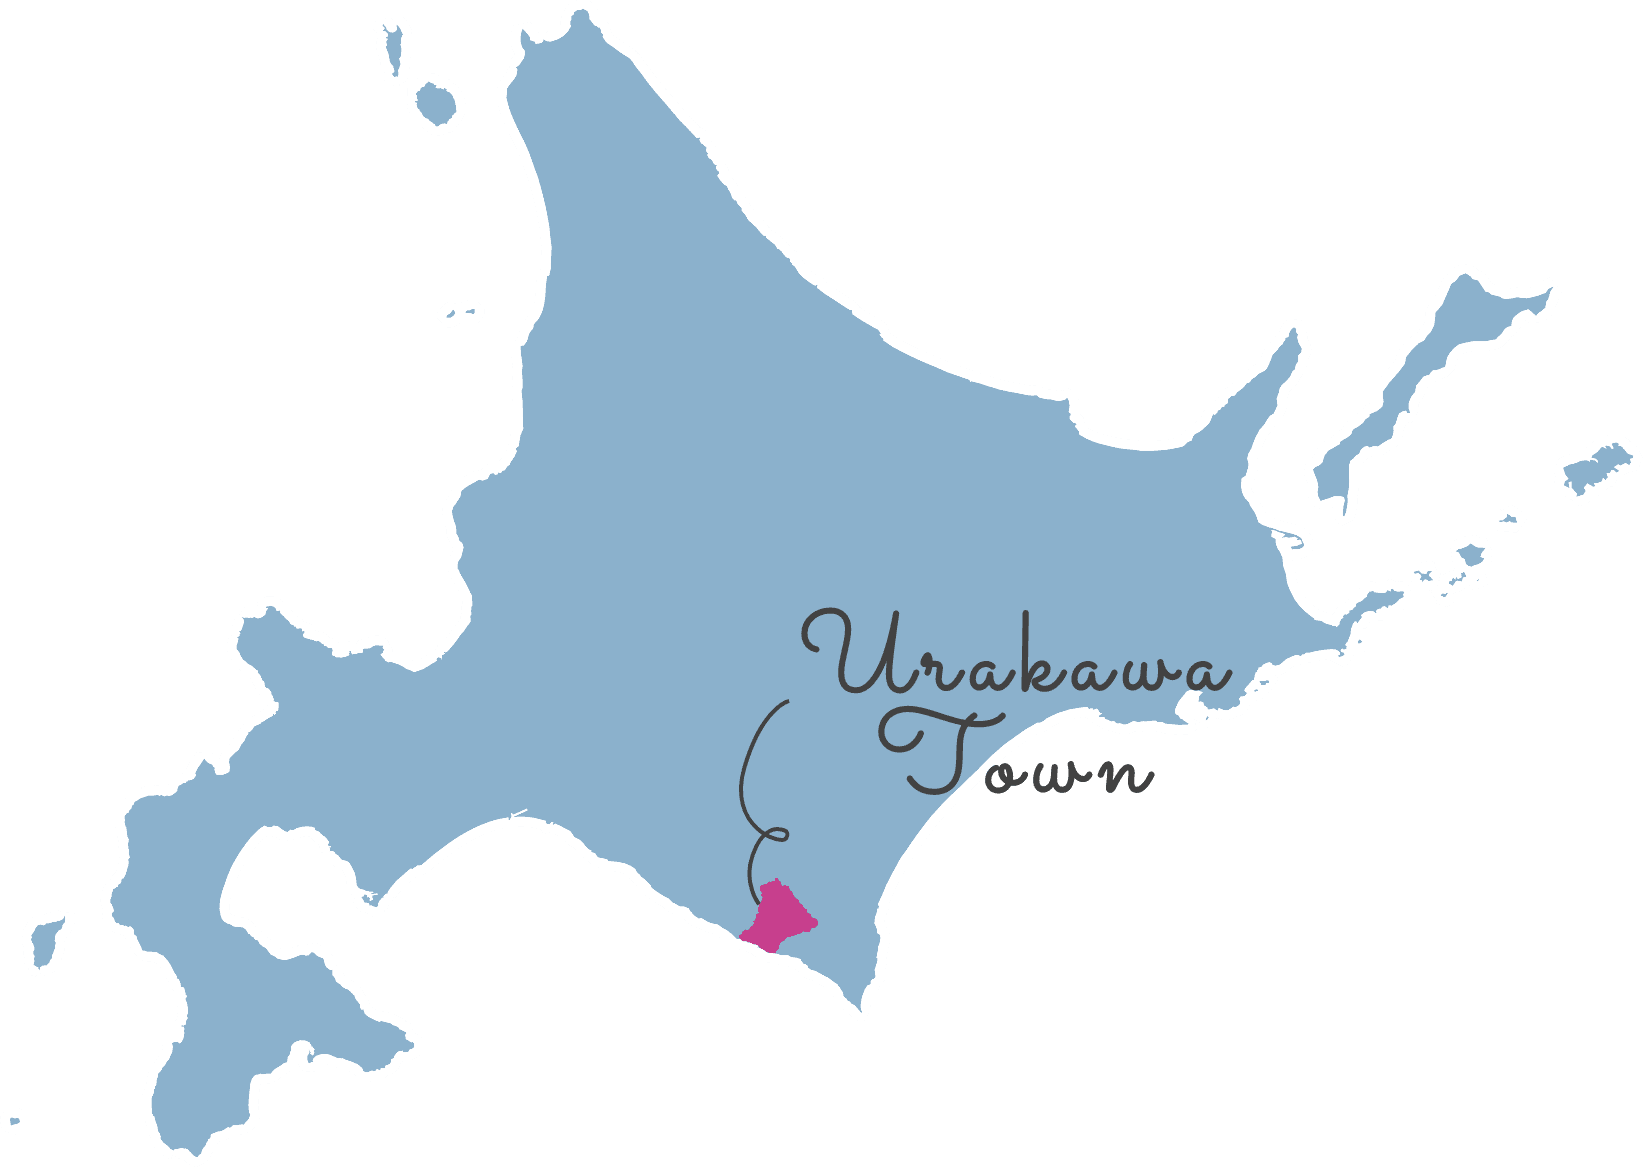 北海道内の浦河町の位置を示す地図